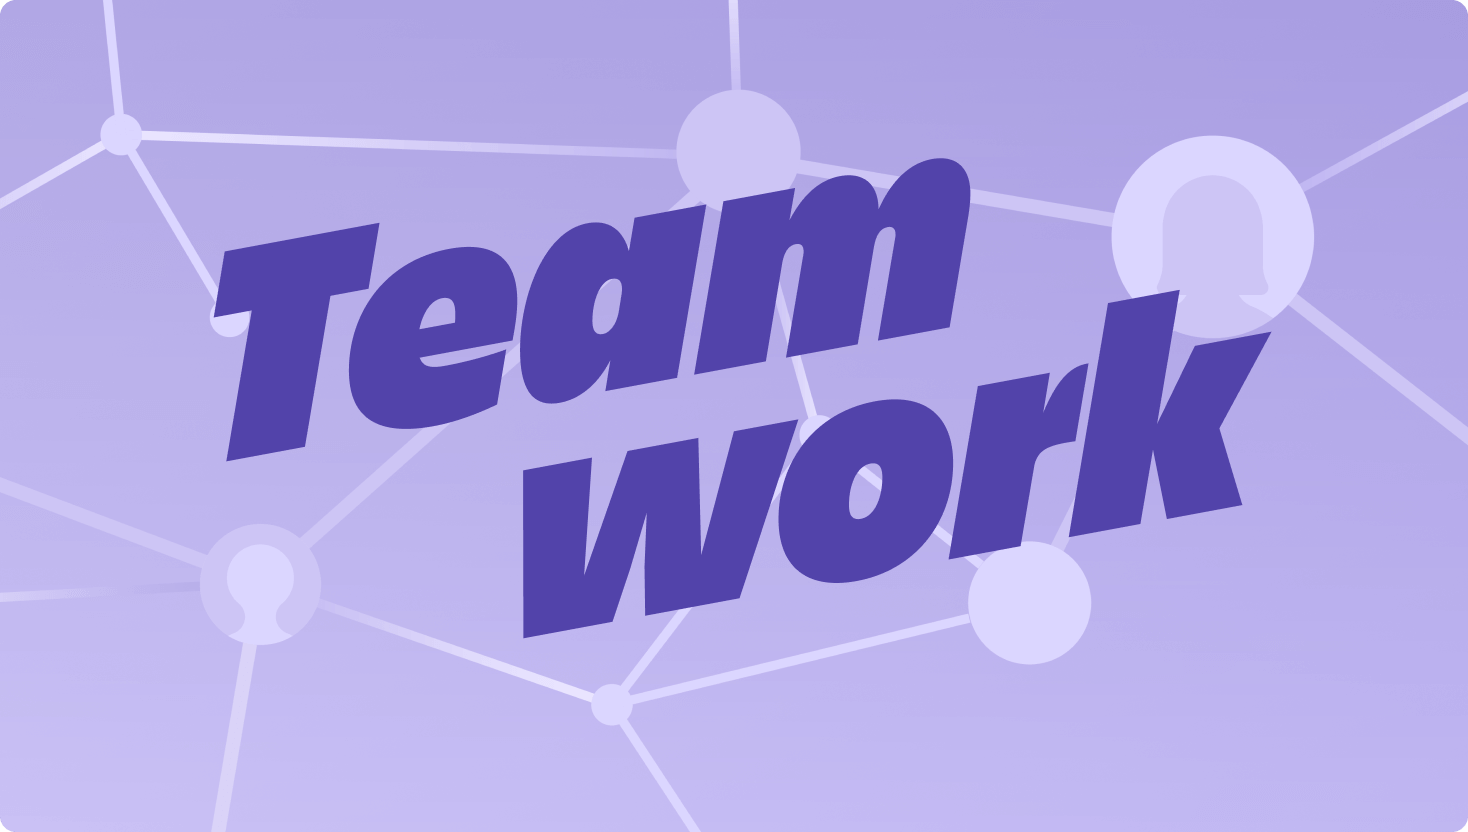 Lila kép összekapcsolódó csomópontokról egy hálózatban a Teamwork szó prominens megjelenítésével